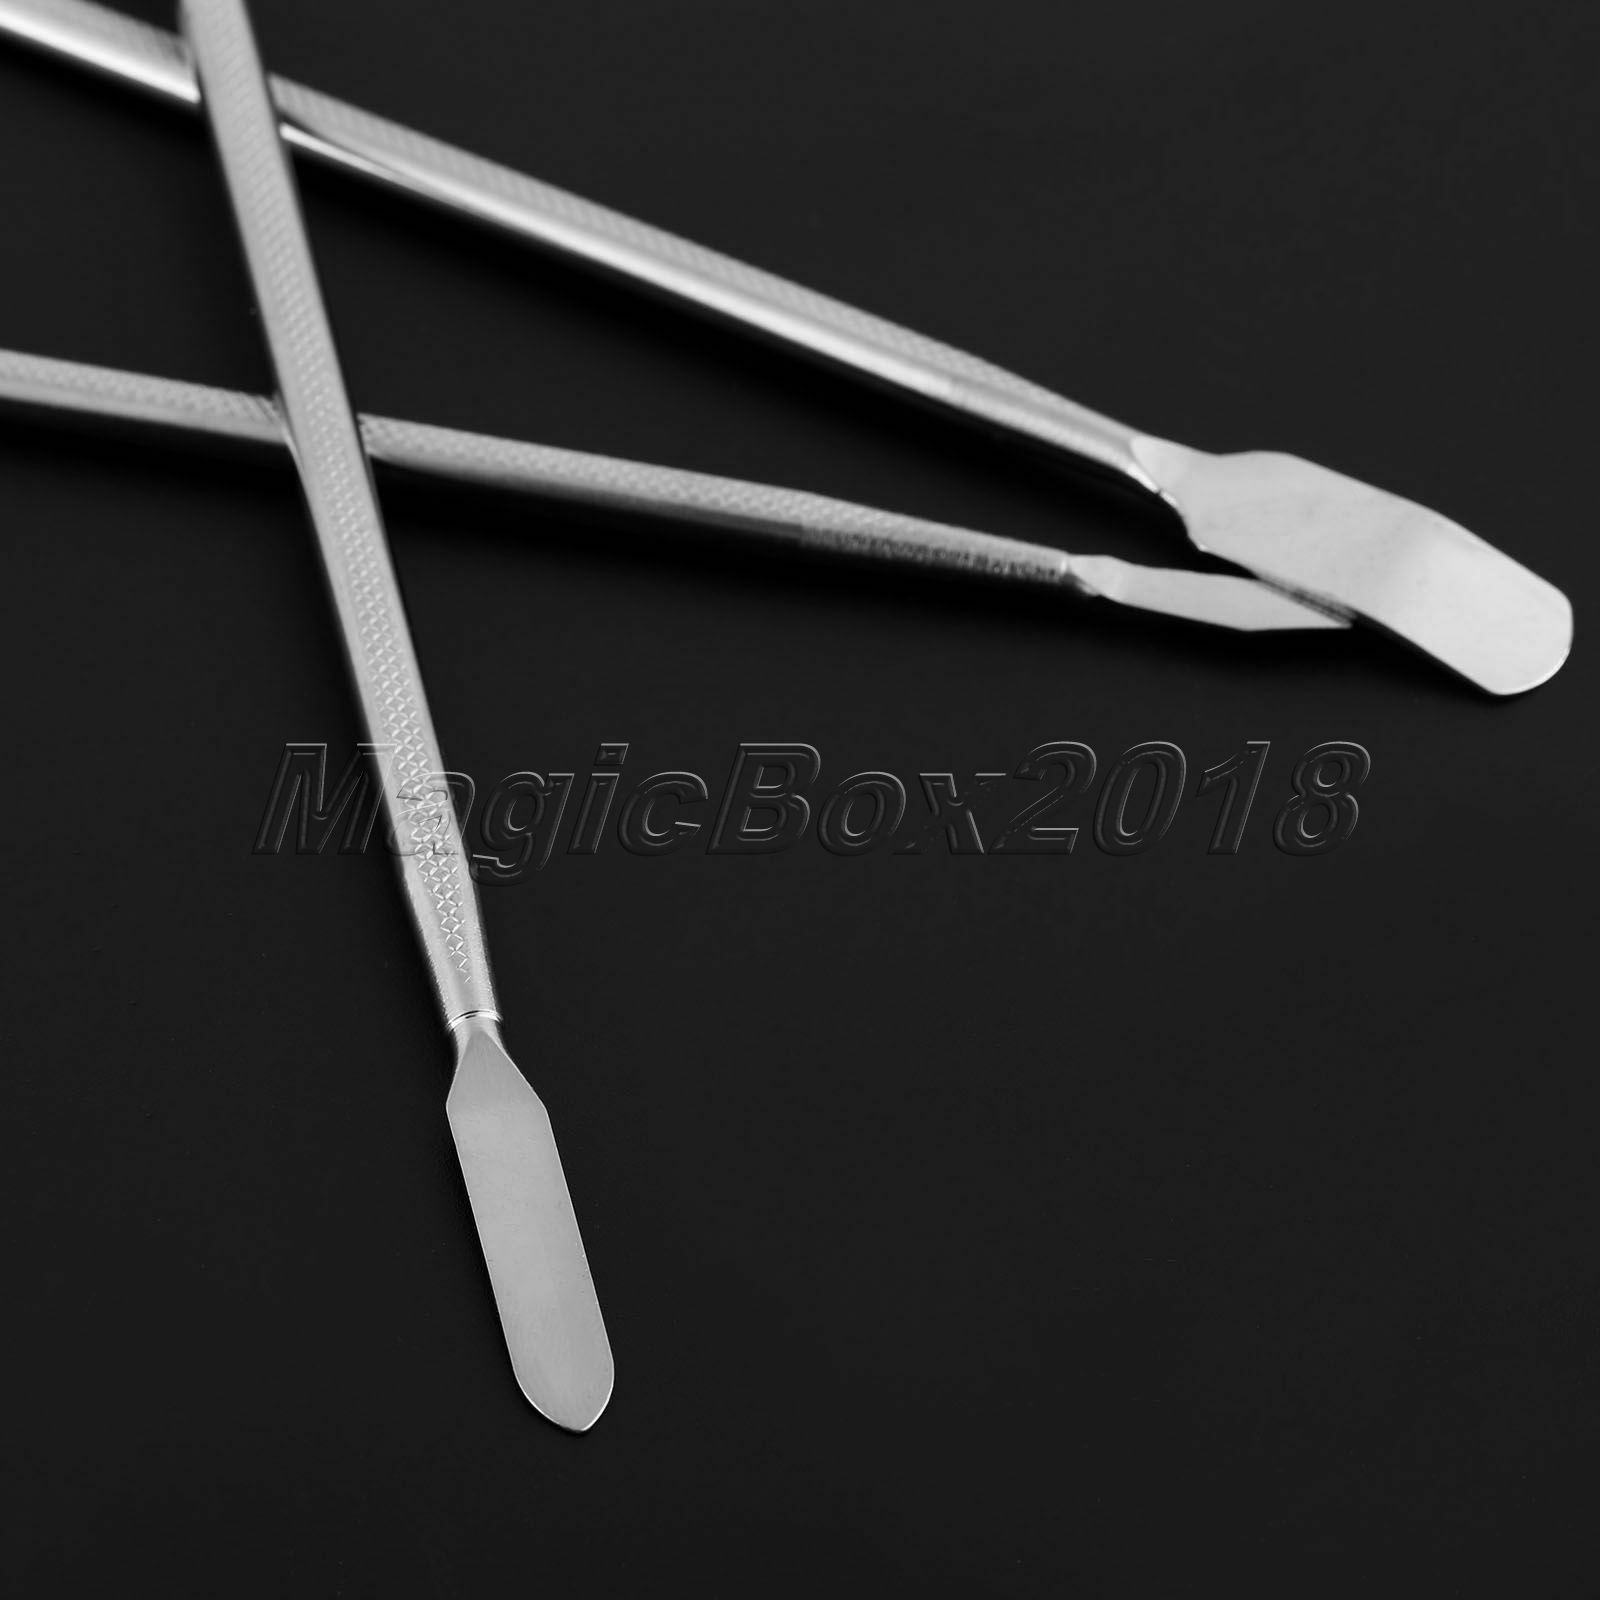 3Pcs 17cm Metal Pry Spudger Disassemble Repair Opening Tools For Phone Tablet